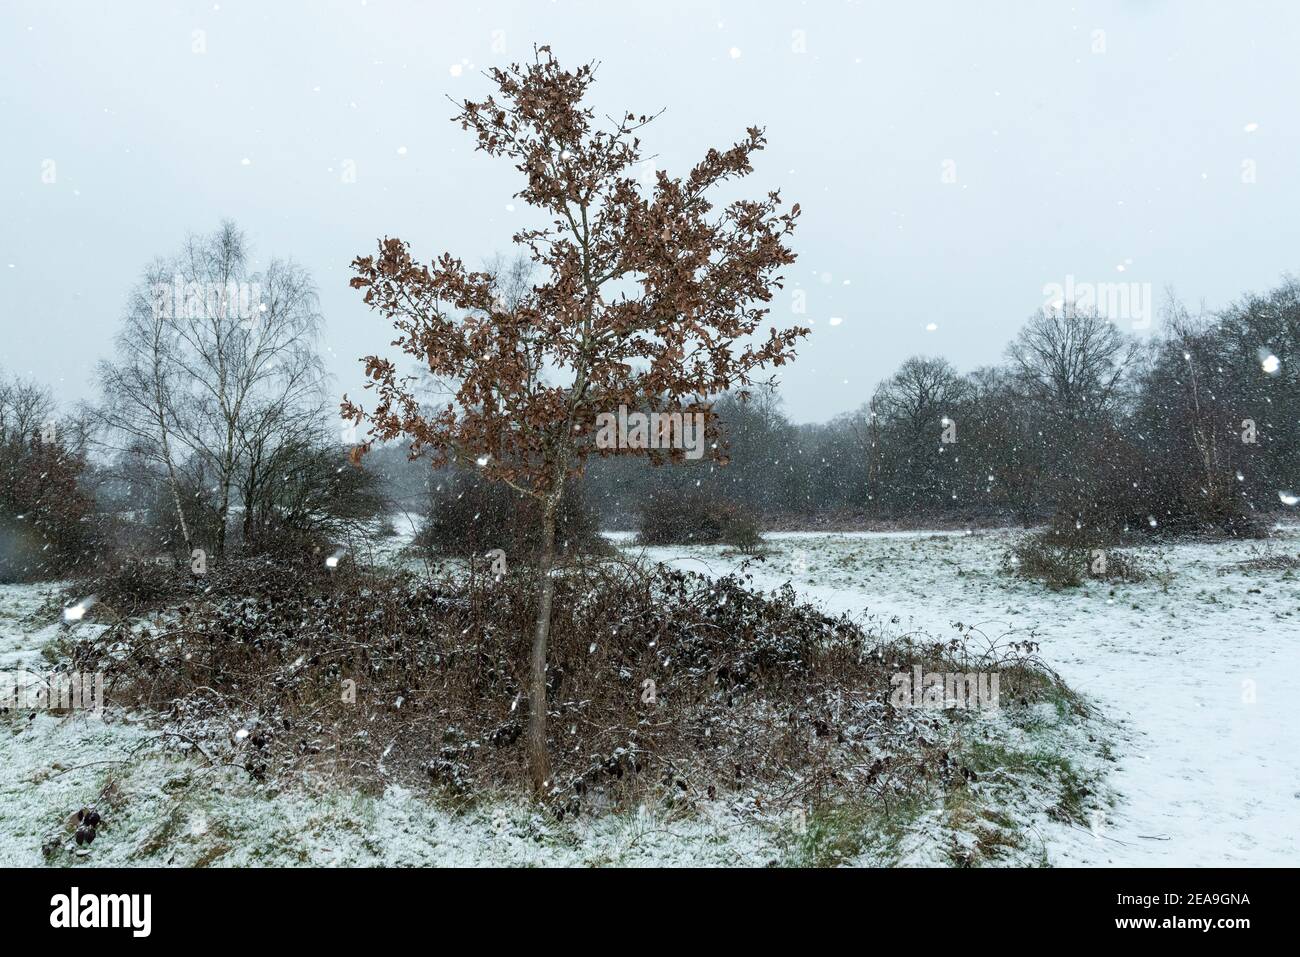 Ruislip, Regno Unito. 8 febbraio 2021. UK Weather: Un albero in Poors Field vicino Ruislip Woods durante le nevi flurries causate da Storm Darcy che ha portato il tempo artico nel Regno Unito dall'Europa. L'Ufficio MET ha emesso gravi avvertenze meteorologiche per i prossimi giorni, poiché si prevede che il clima freddo e nevoso proseguirà. Credit: Stephen Chung / Alamy Live News Foto Stock